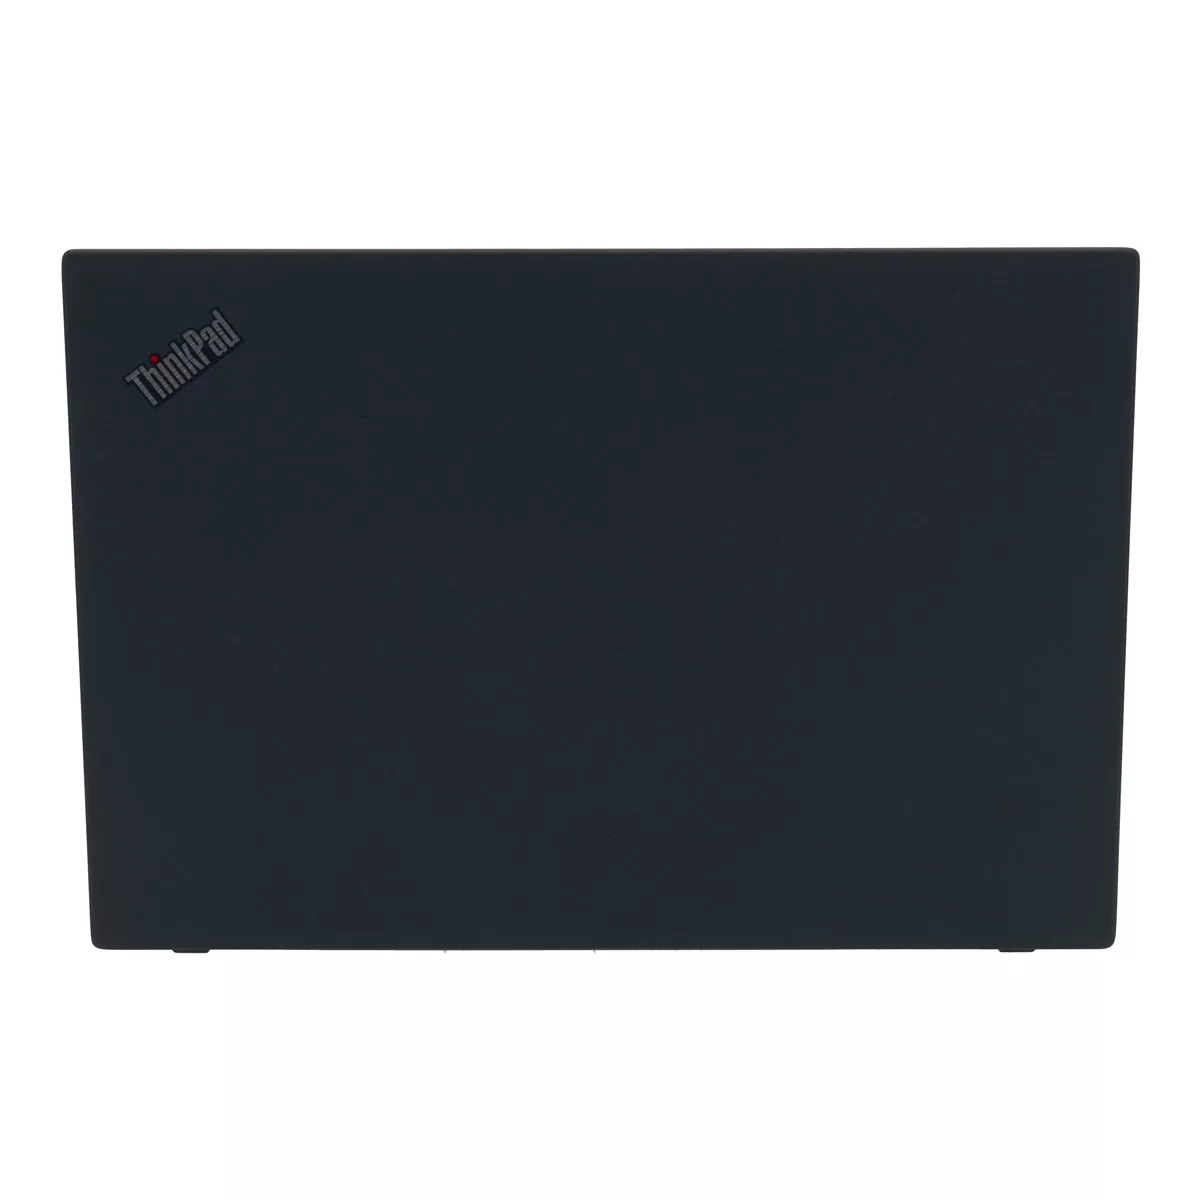 Lenovo ThinkPad L490 Core i3 8145U 8 GB 240 GB M.2 nVME SSD Webcam A